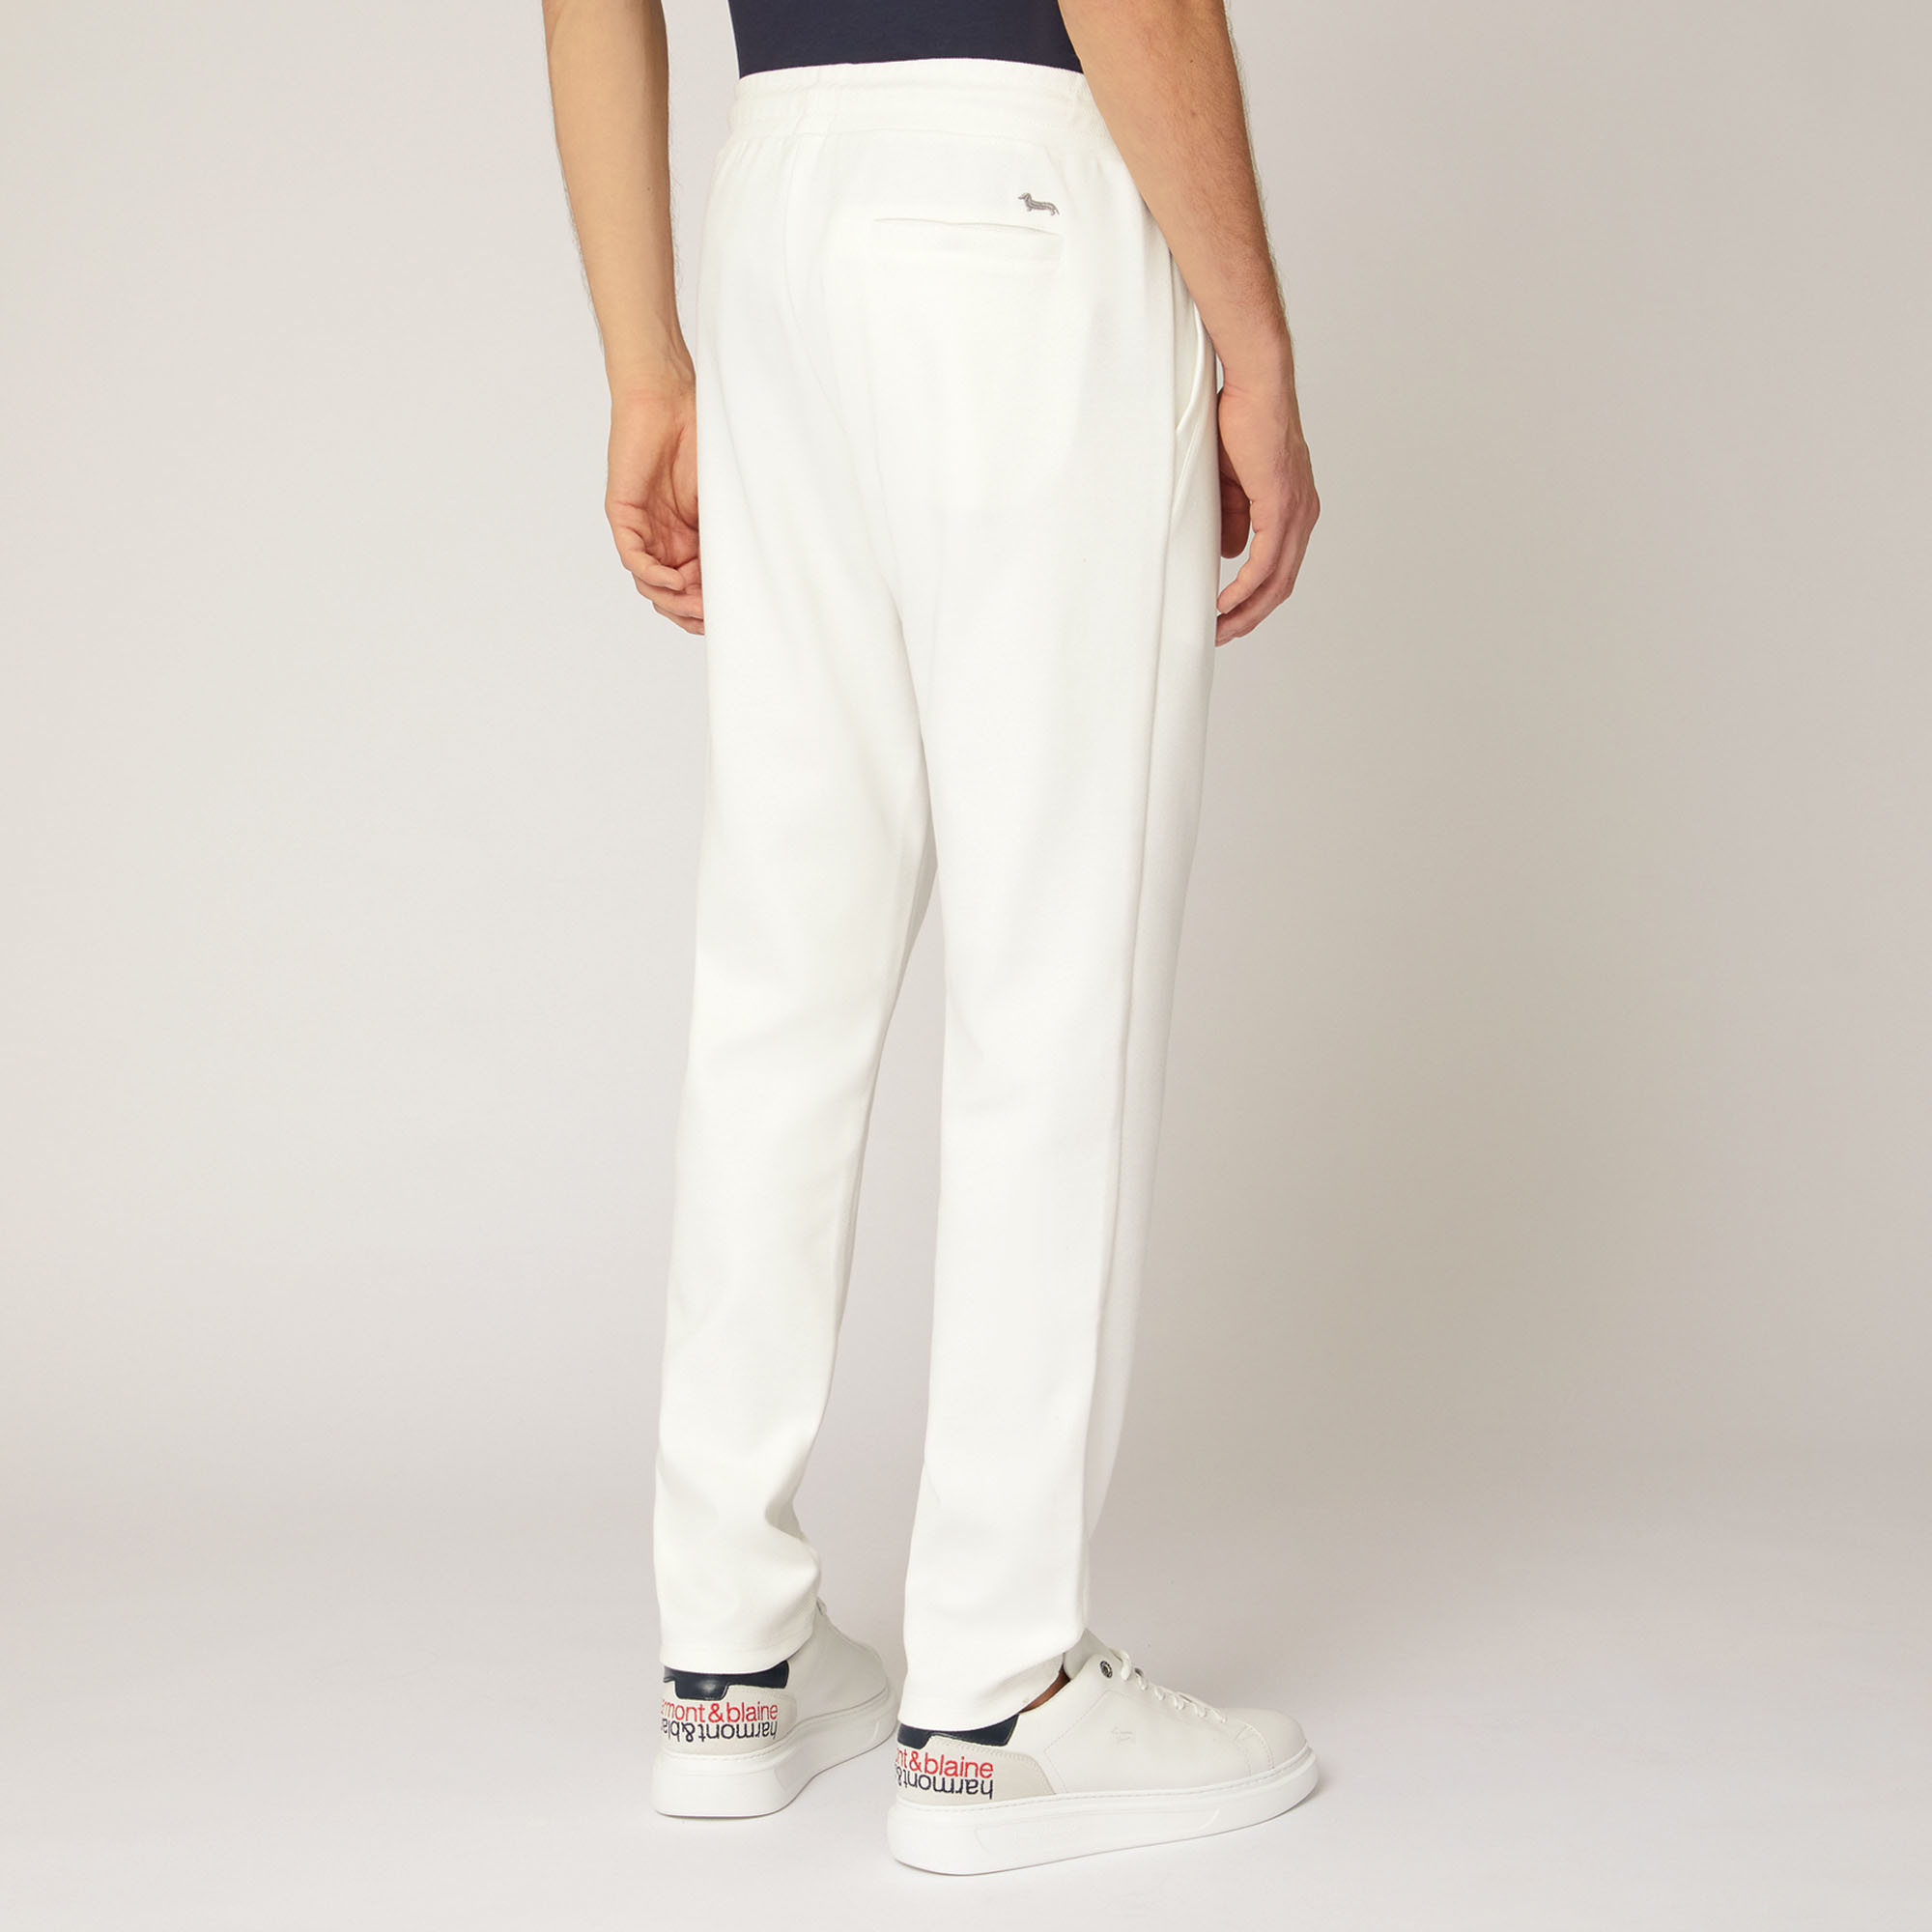 Pantalón de algodón elástico con bolsillo trasero, Blanco, large image number 1